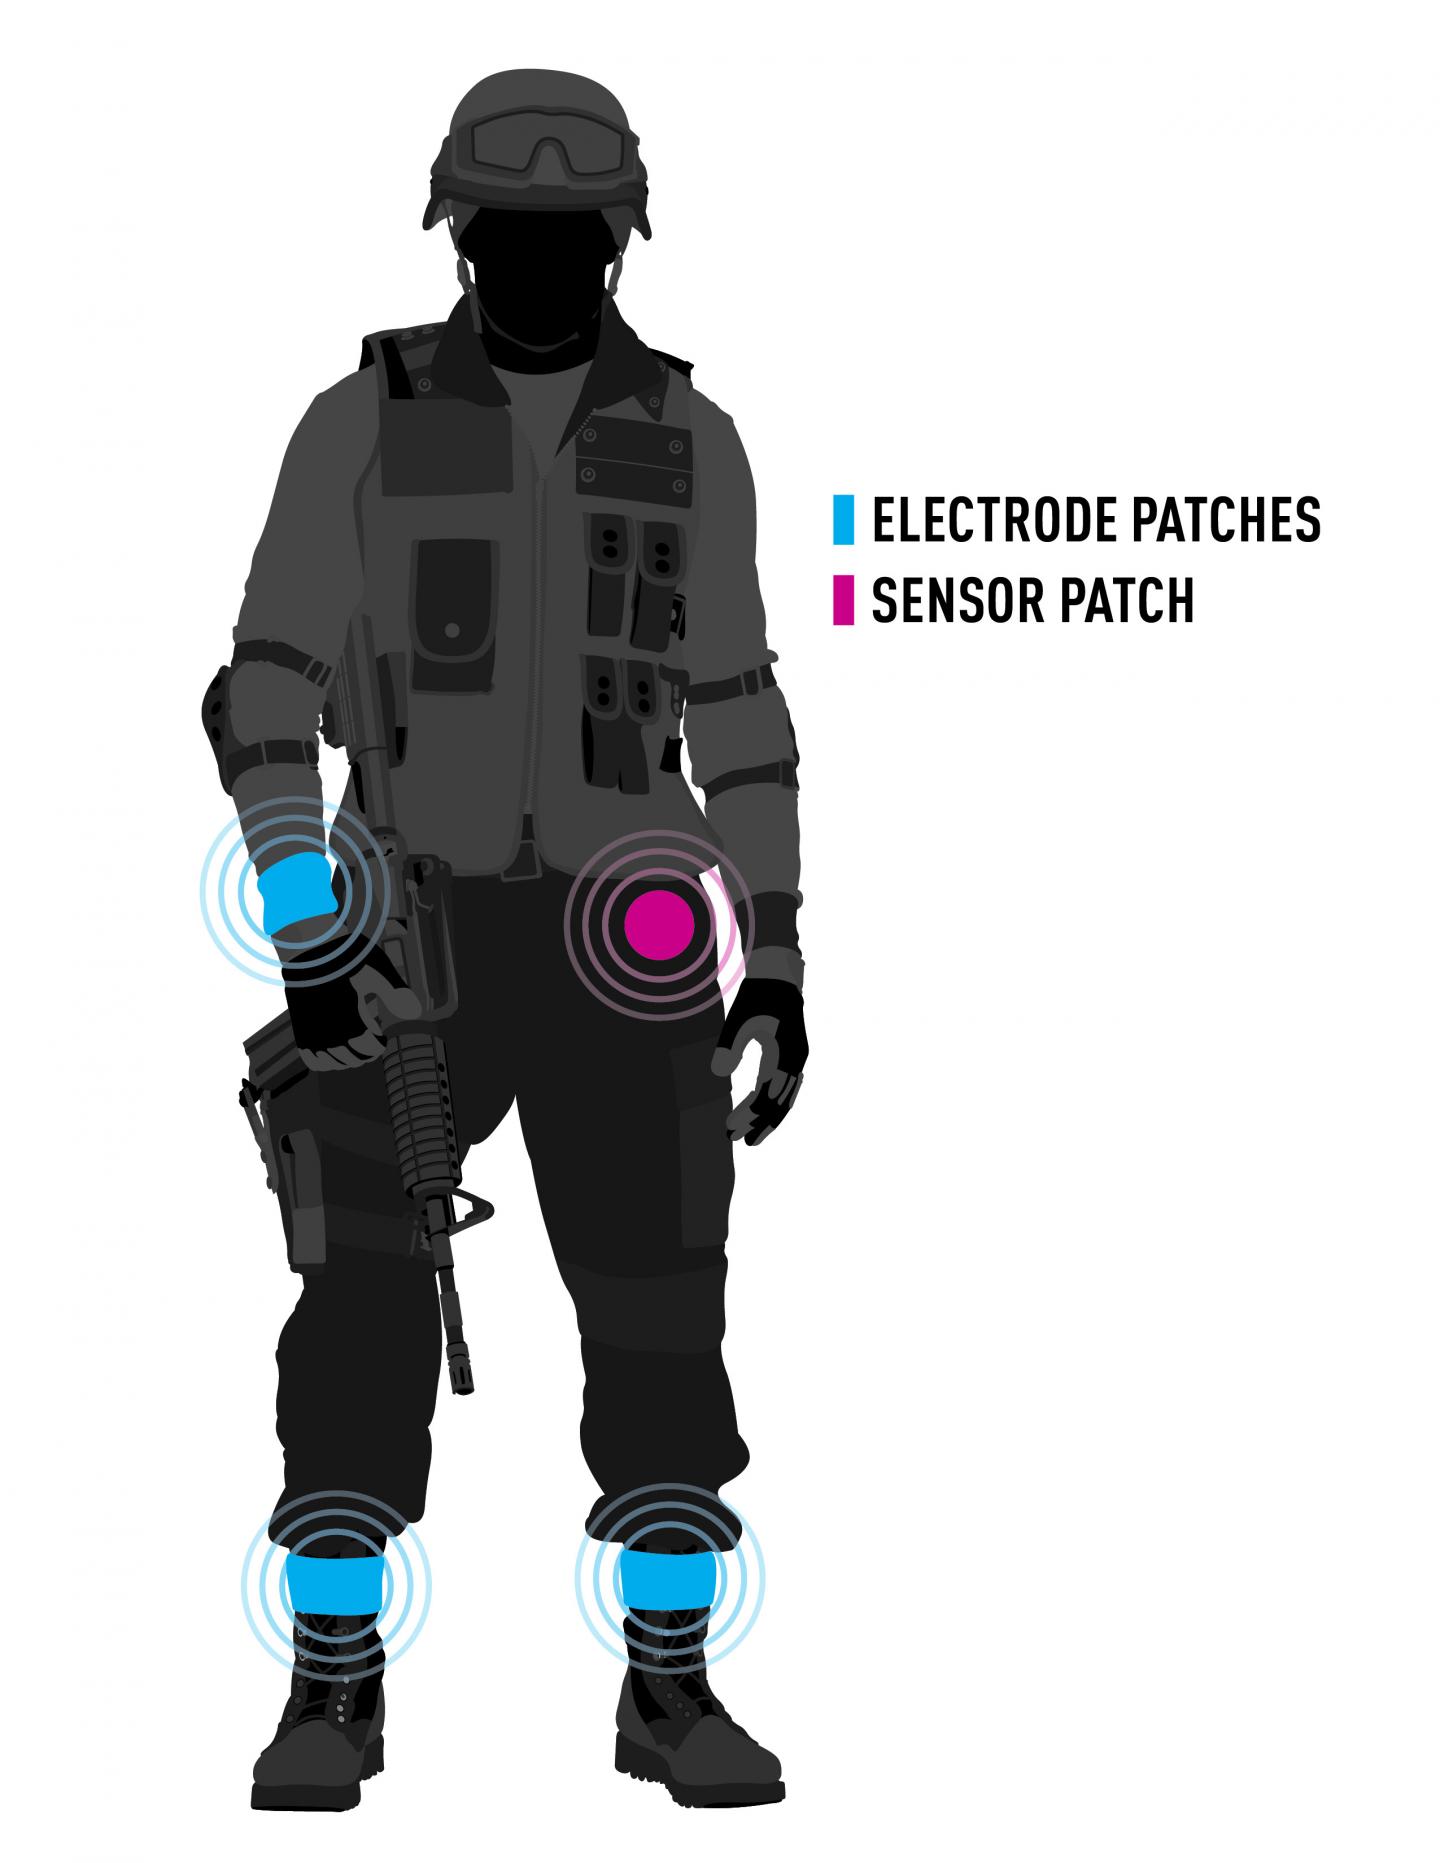 Wearable Tech for the Battlefield